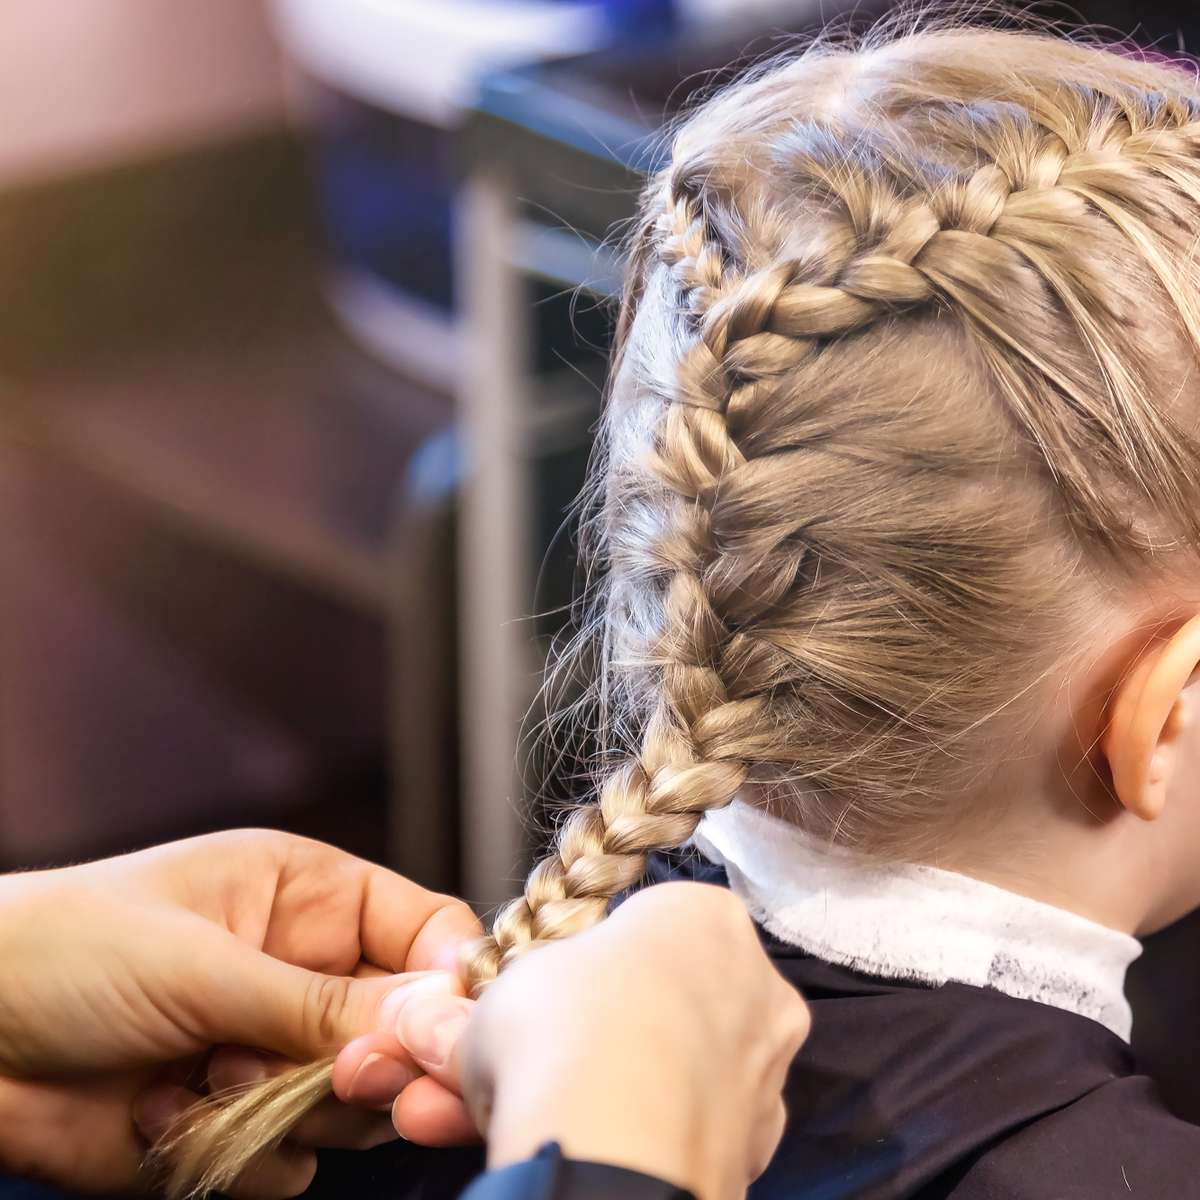 10 inspirações de penteados para crianças com cabelos cacheados e crespos